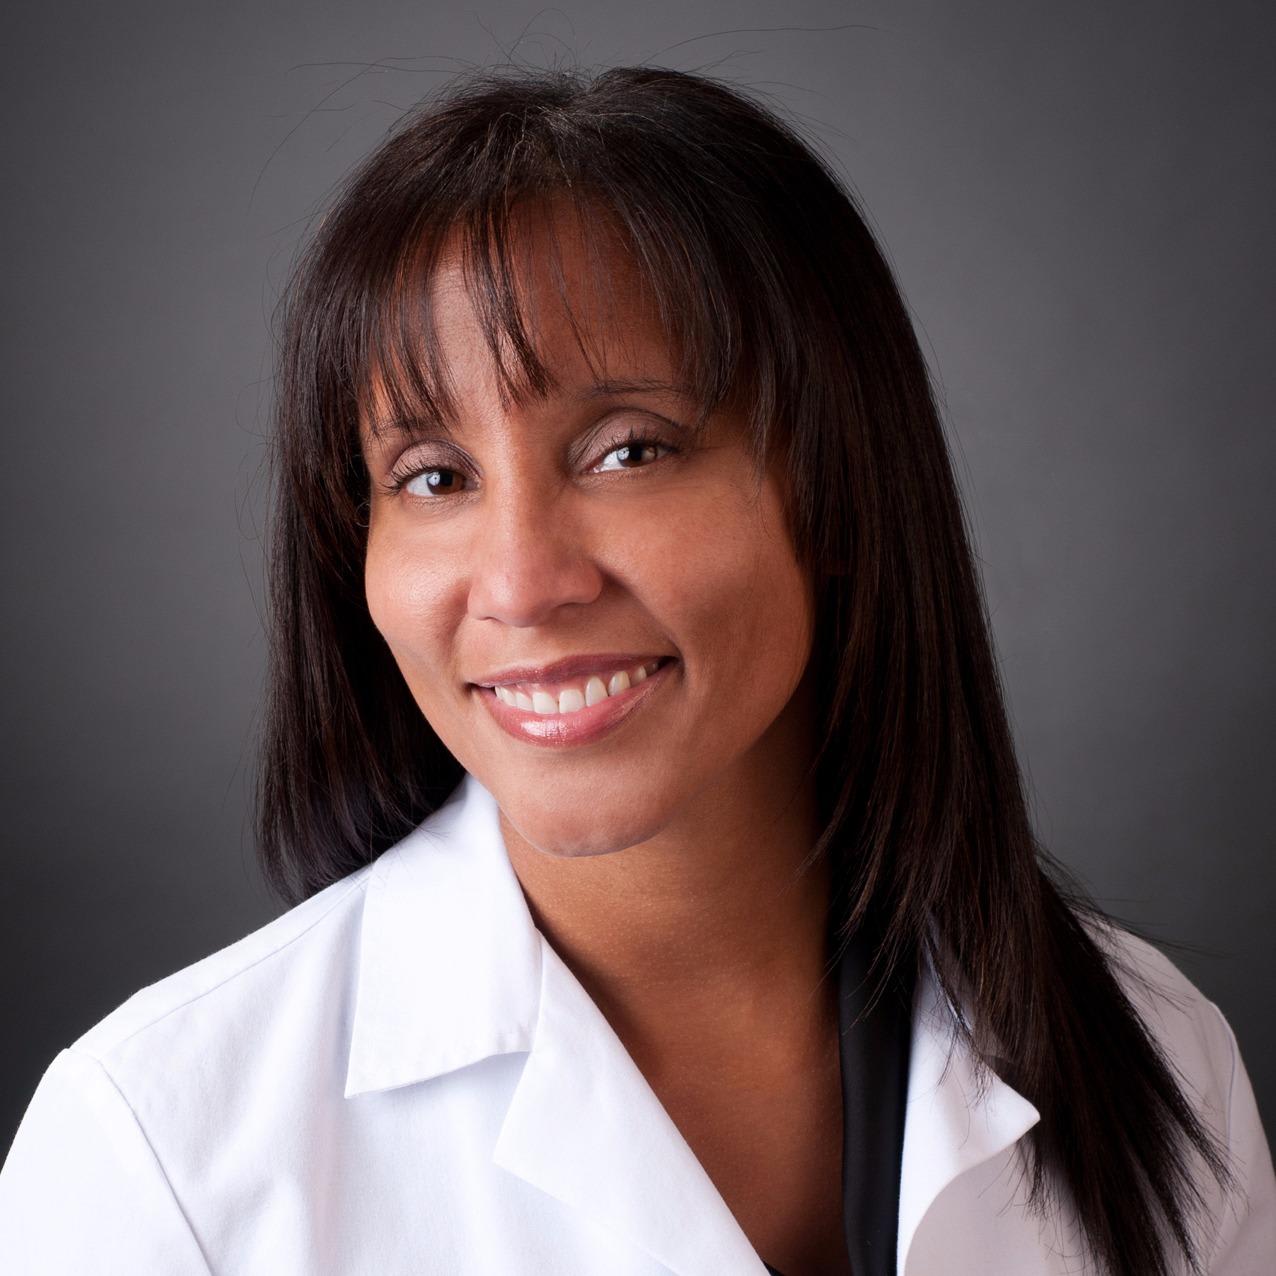 Dr. Alicia Michelle Grady